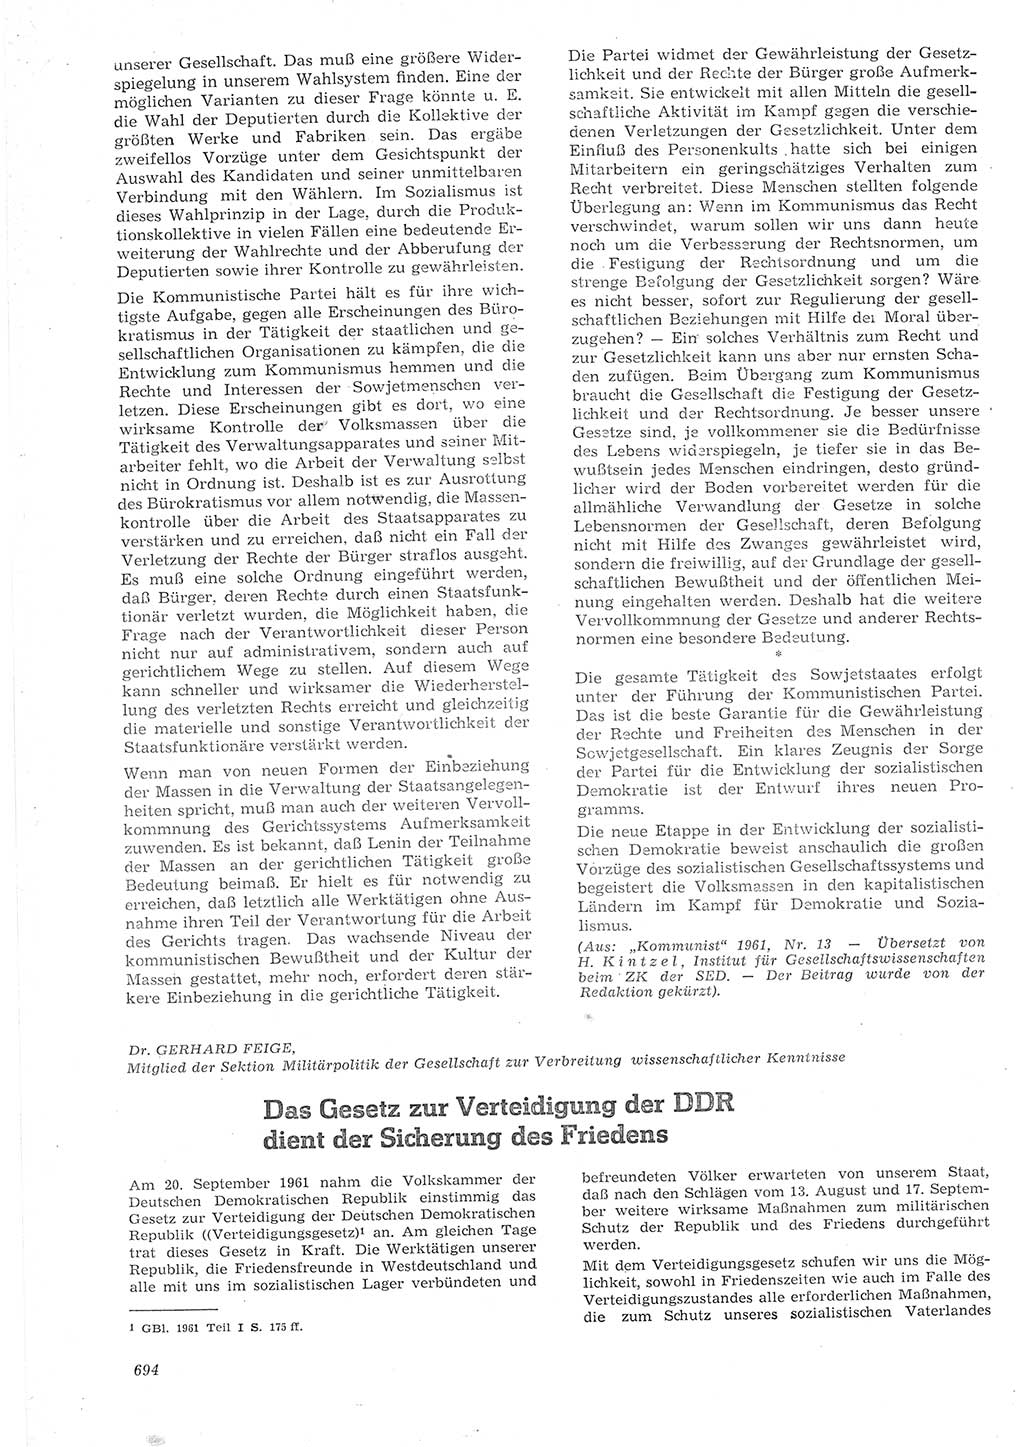 Neue Justiz (NJ), Zeitschrift für Recht und Rechtswissenschaft [Deutsche Demokratische Republik (DDR)], 15. Jahrgang 1961, Seite 694 (NJ DDR 1961, S. 694)